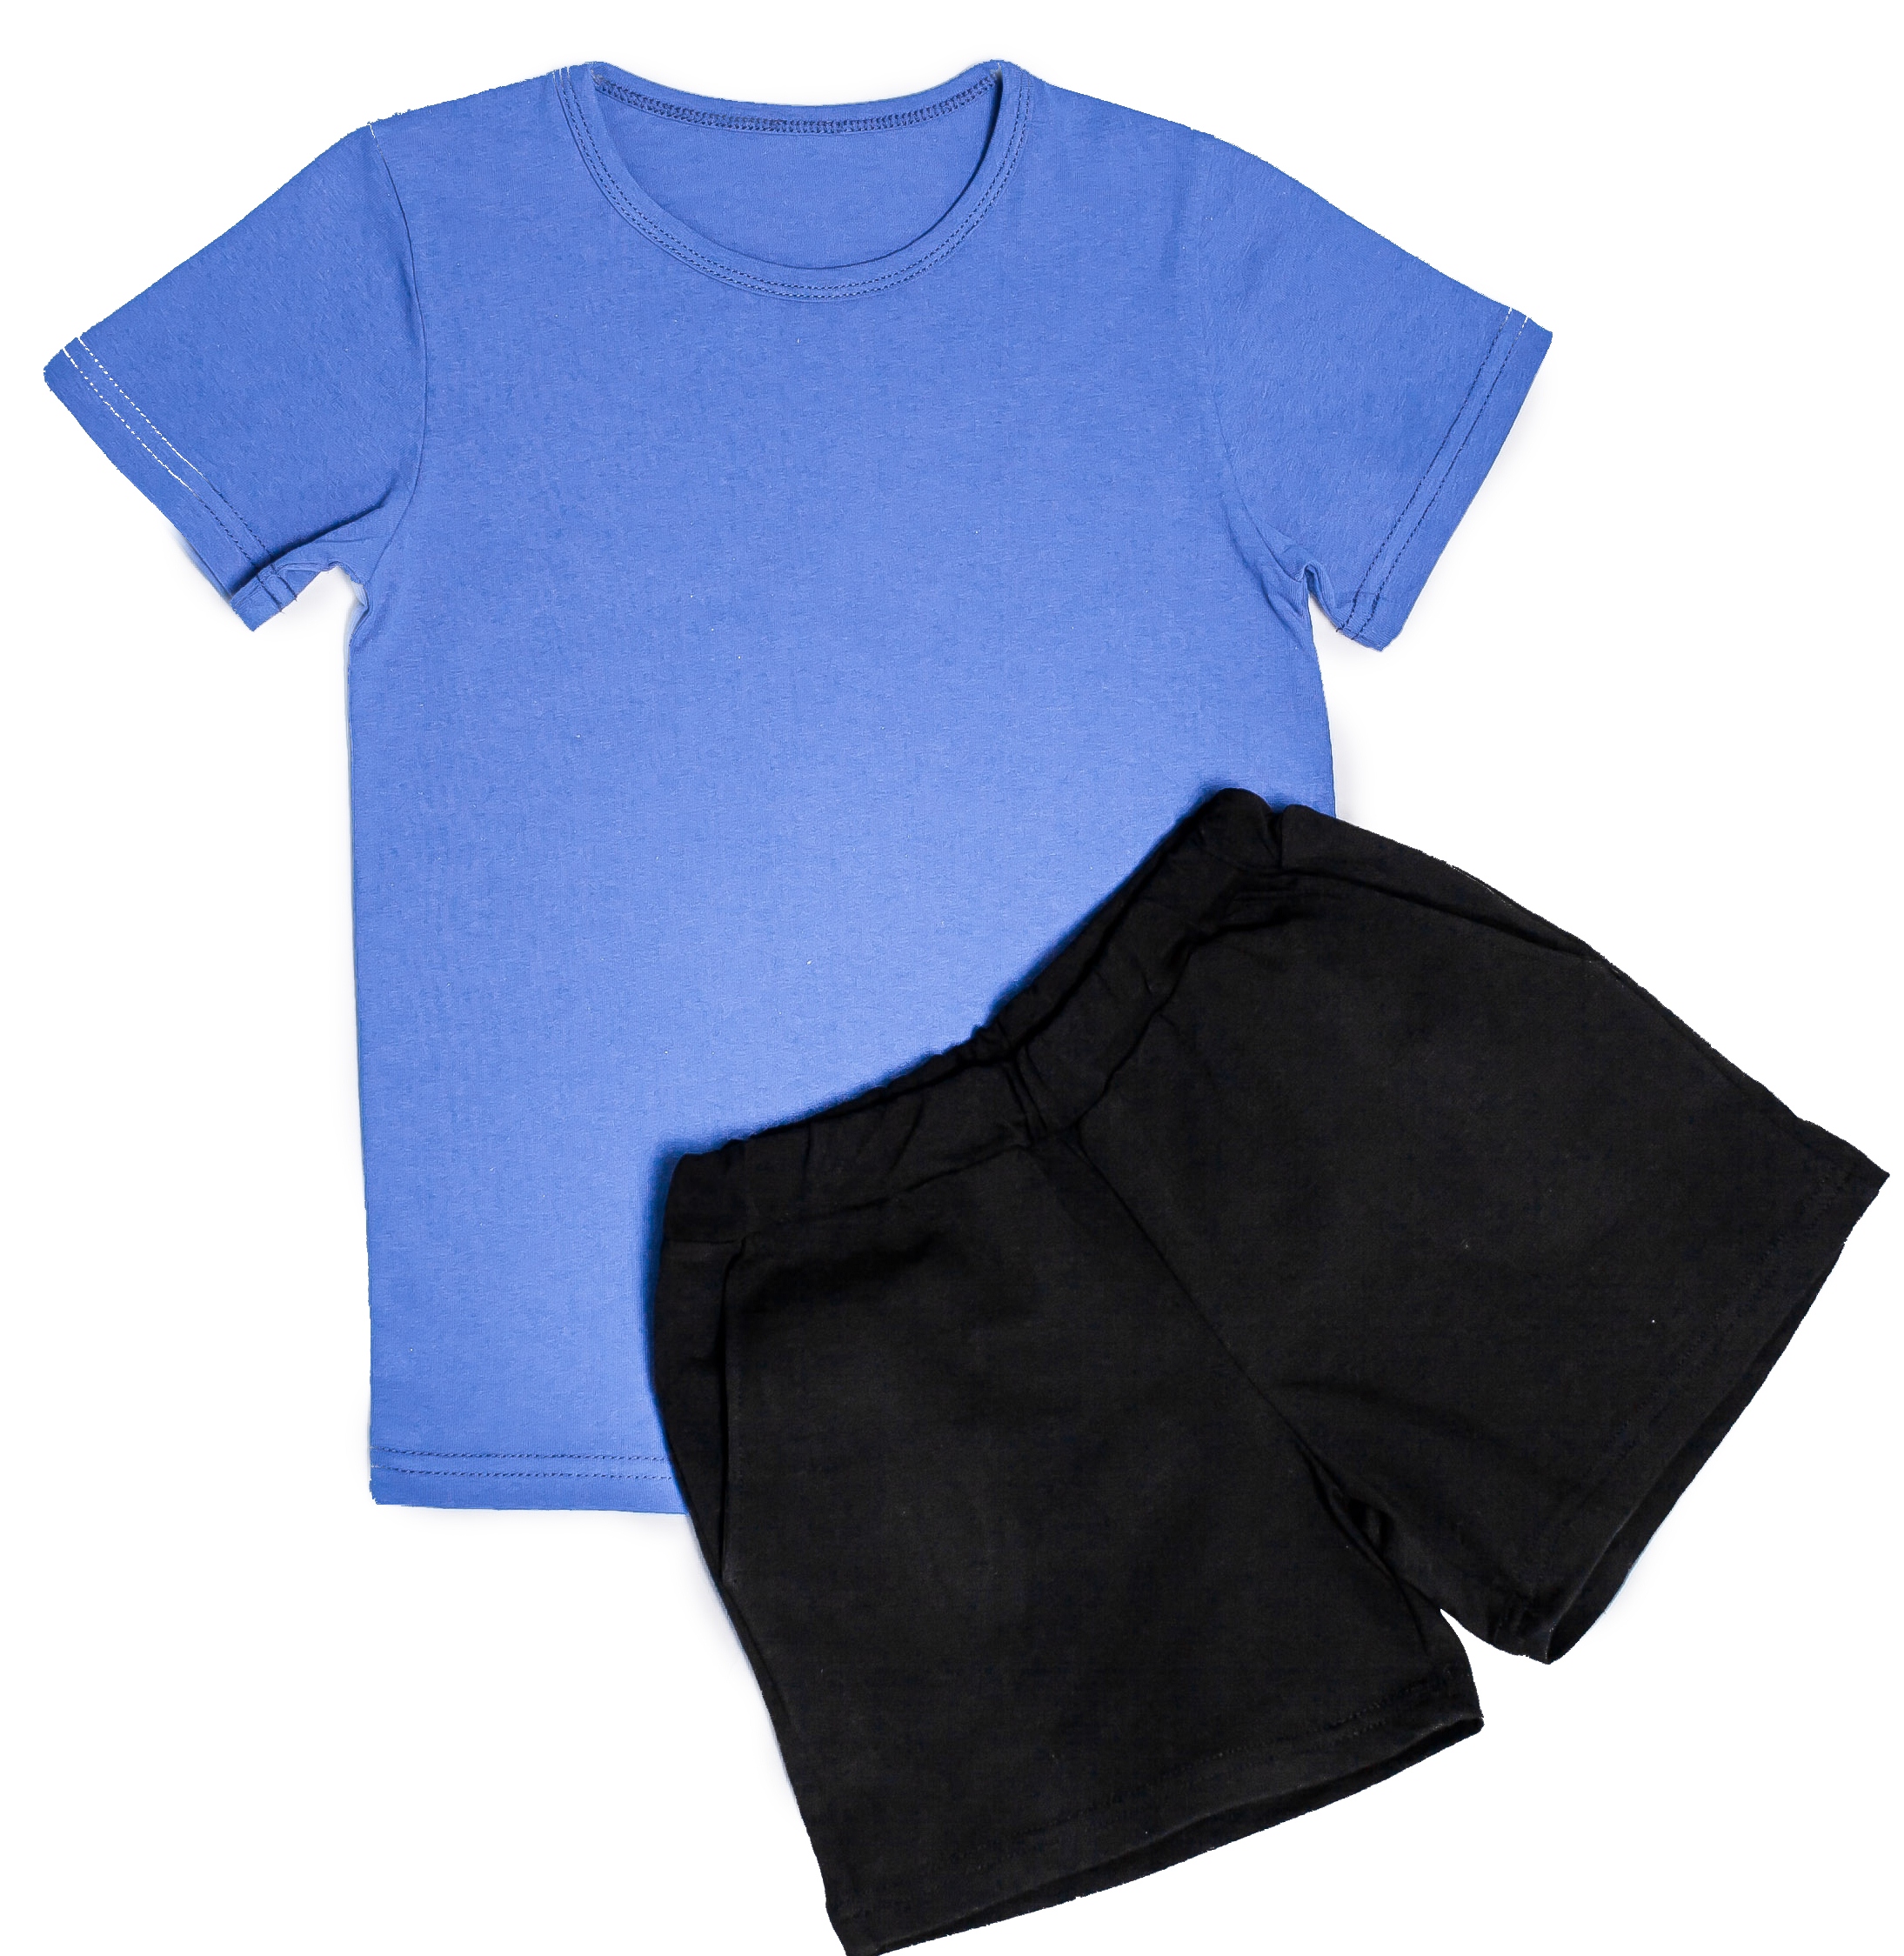 Футболка и шорты синие. Детские шорты для физкультуры. Чёрные шорты для мальчика на физкультуру. Синяя футболка черные шорты. Детские спортивные шорты и футболка.